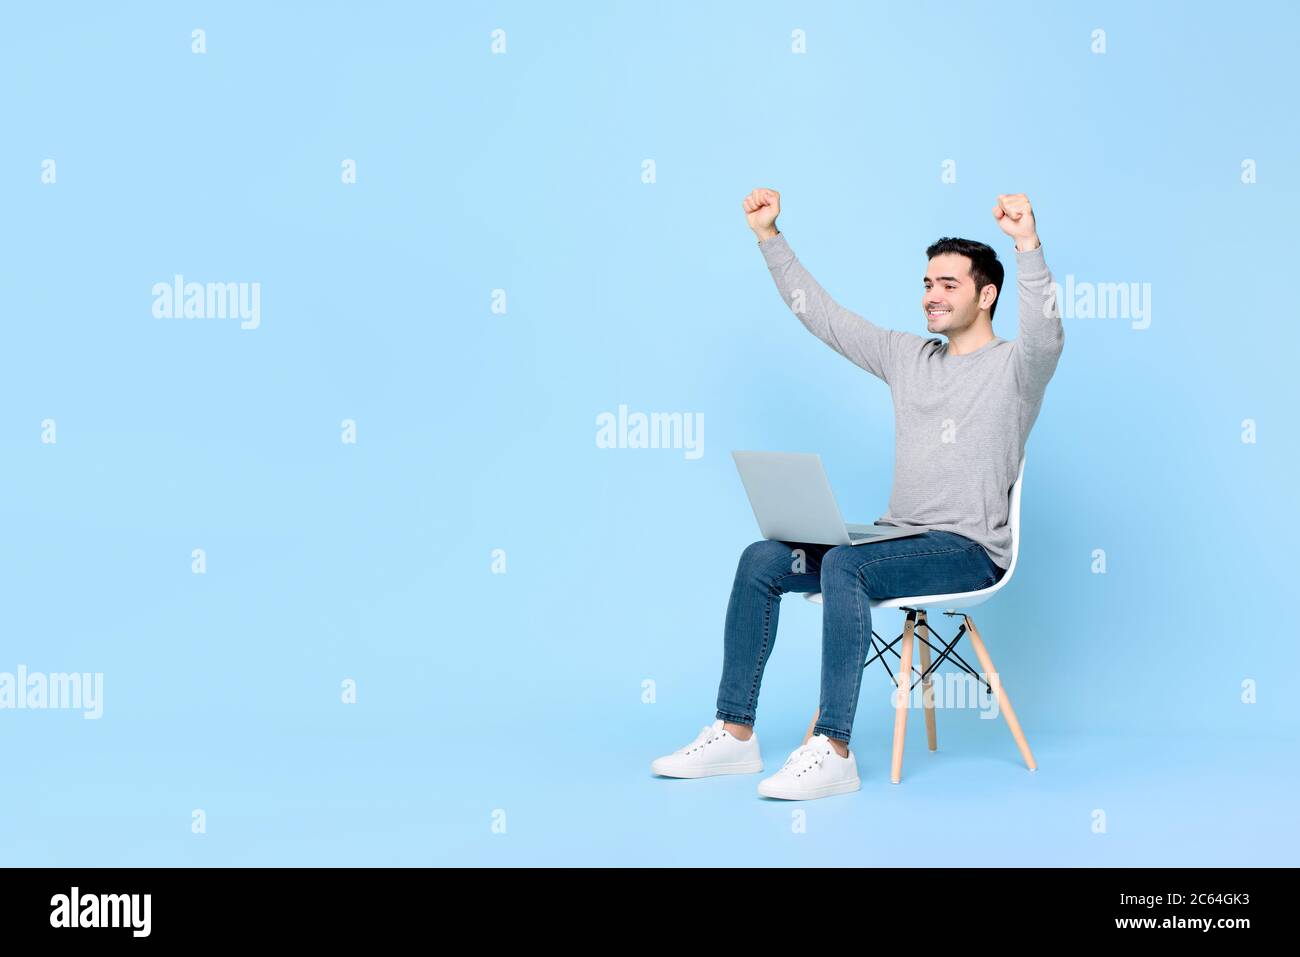 Jeune homme de race blanche, écostatique, qui gagne, levant les deux poings avec un ordinateur portable sur les genoux sur fond bleu clair avec un espace de copie Banque D'Images